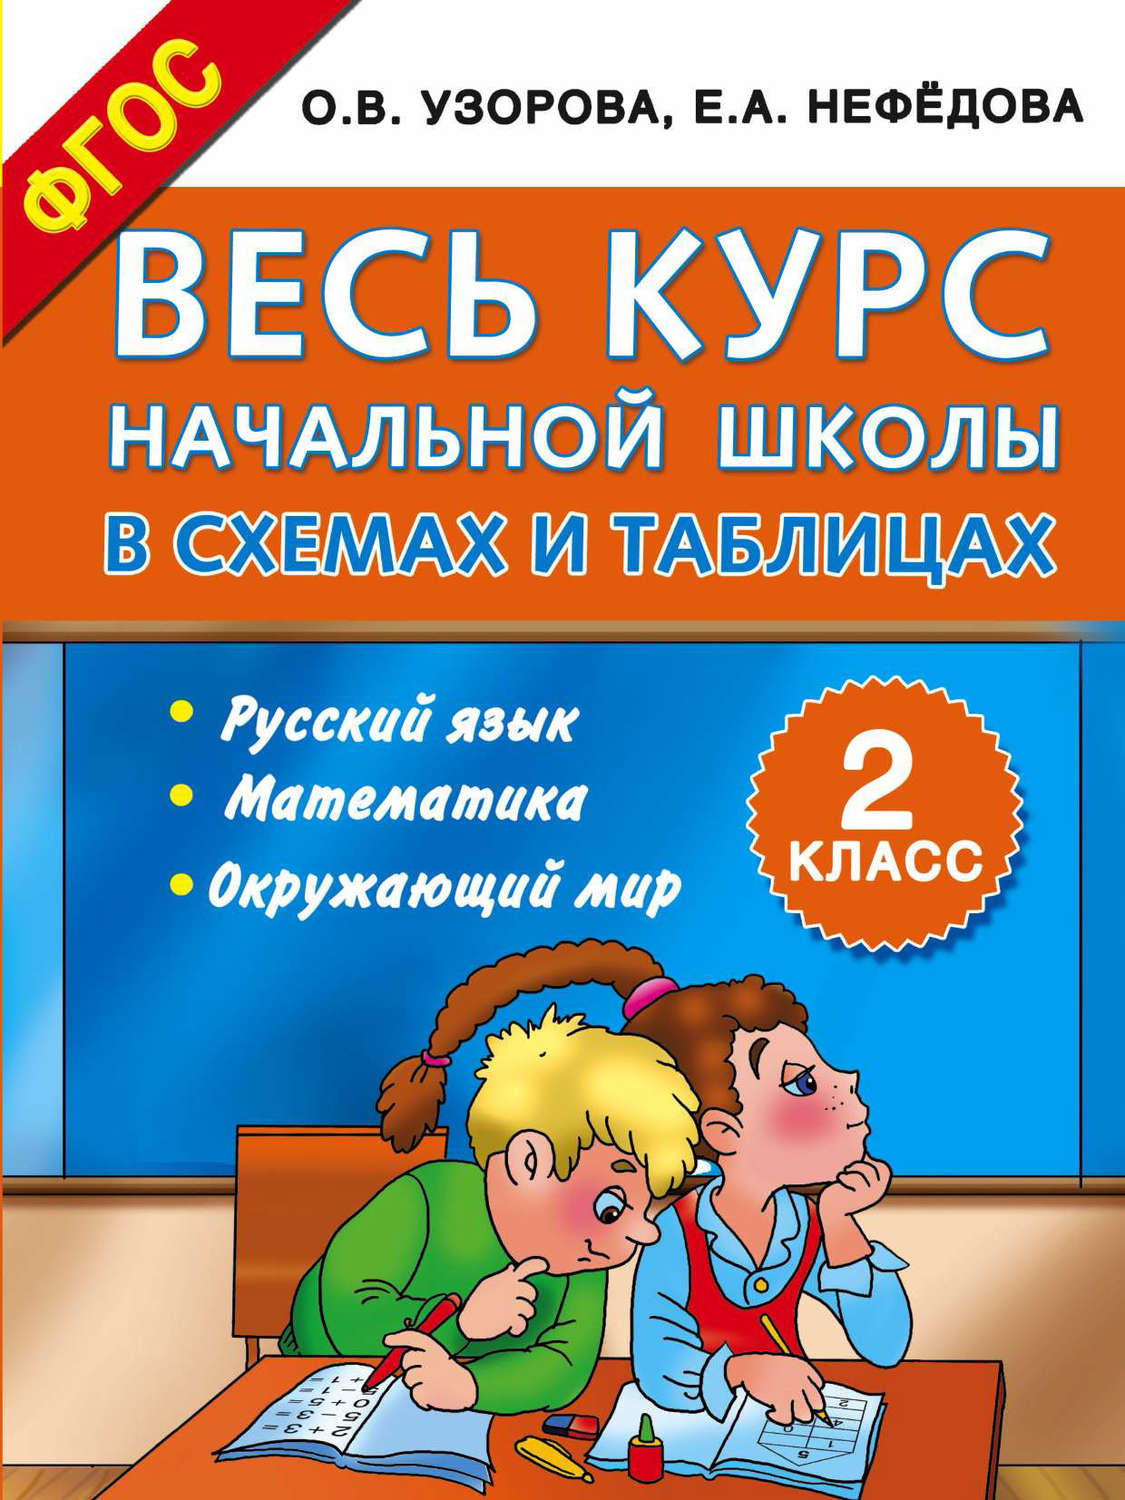 Методички гдз 4 класса по русскому языку узорова